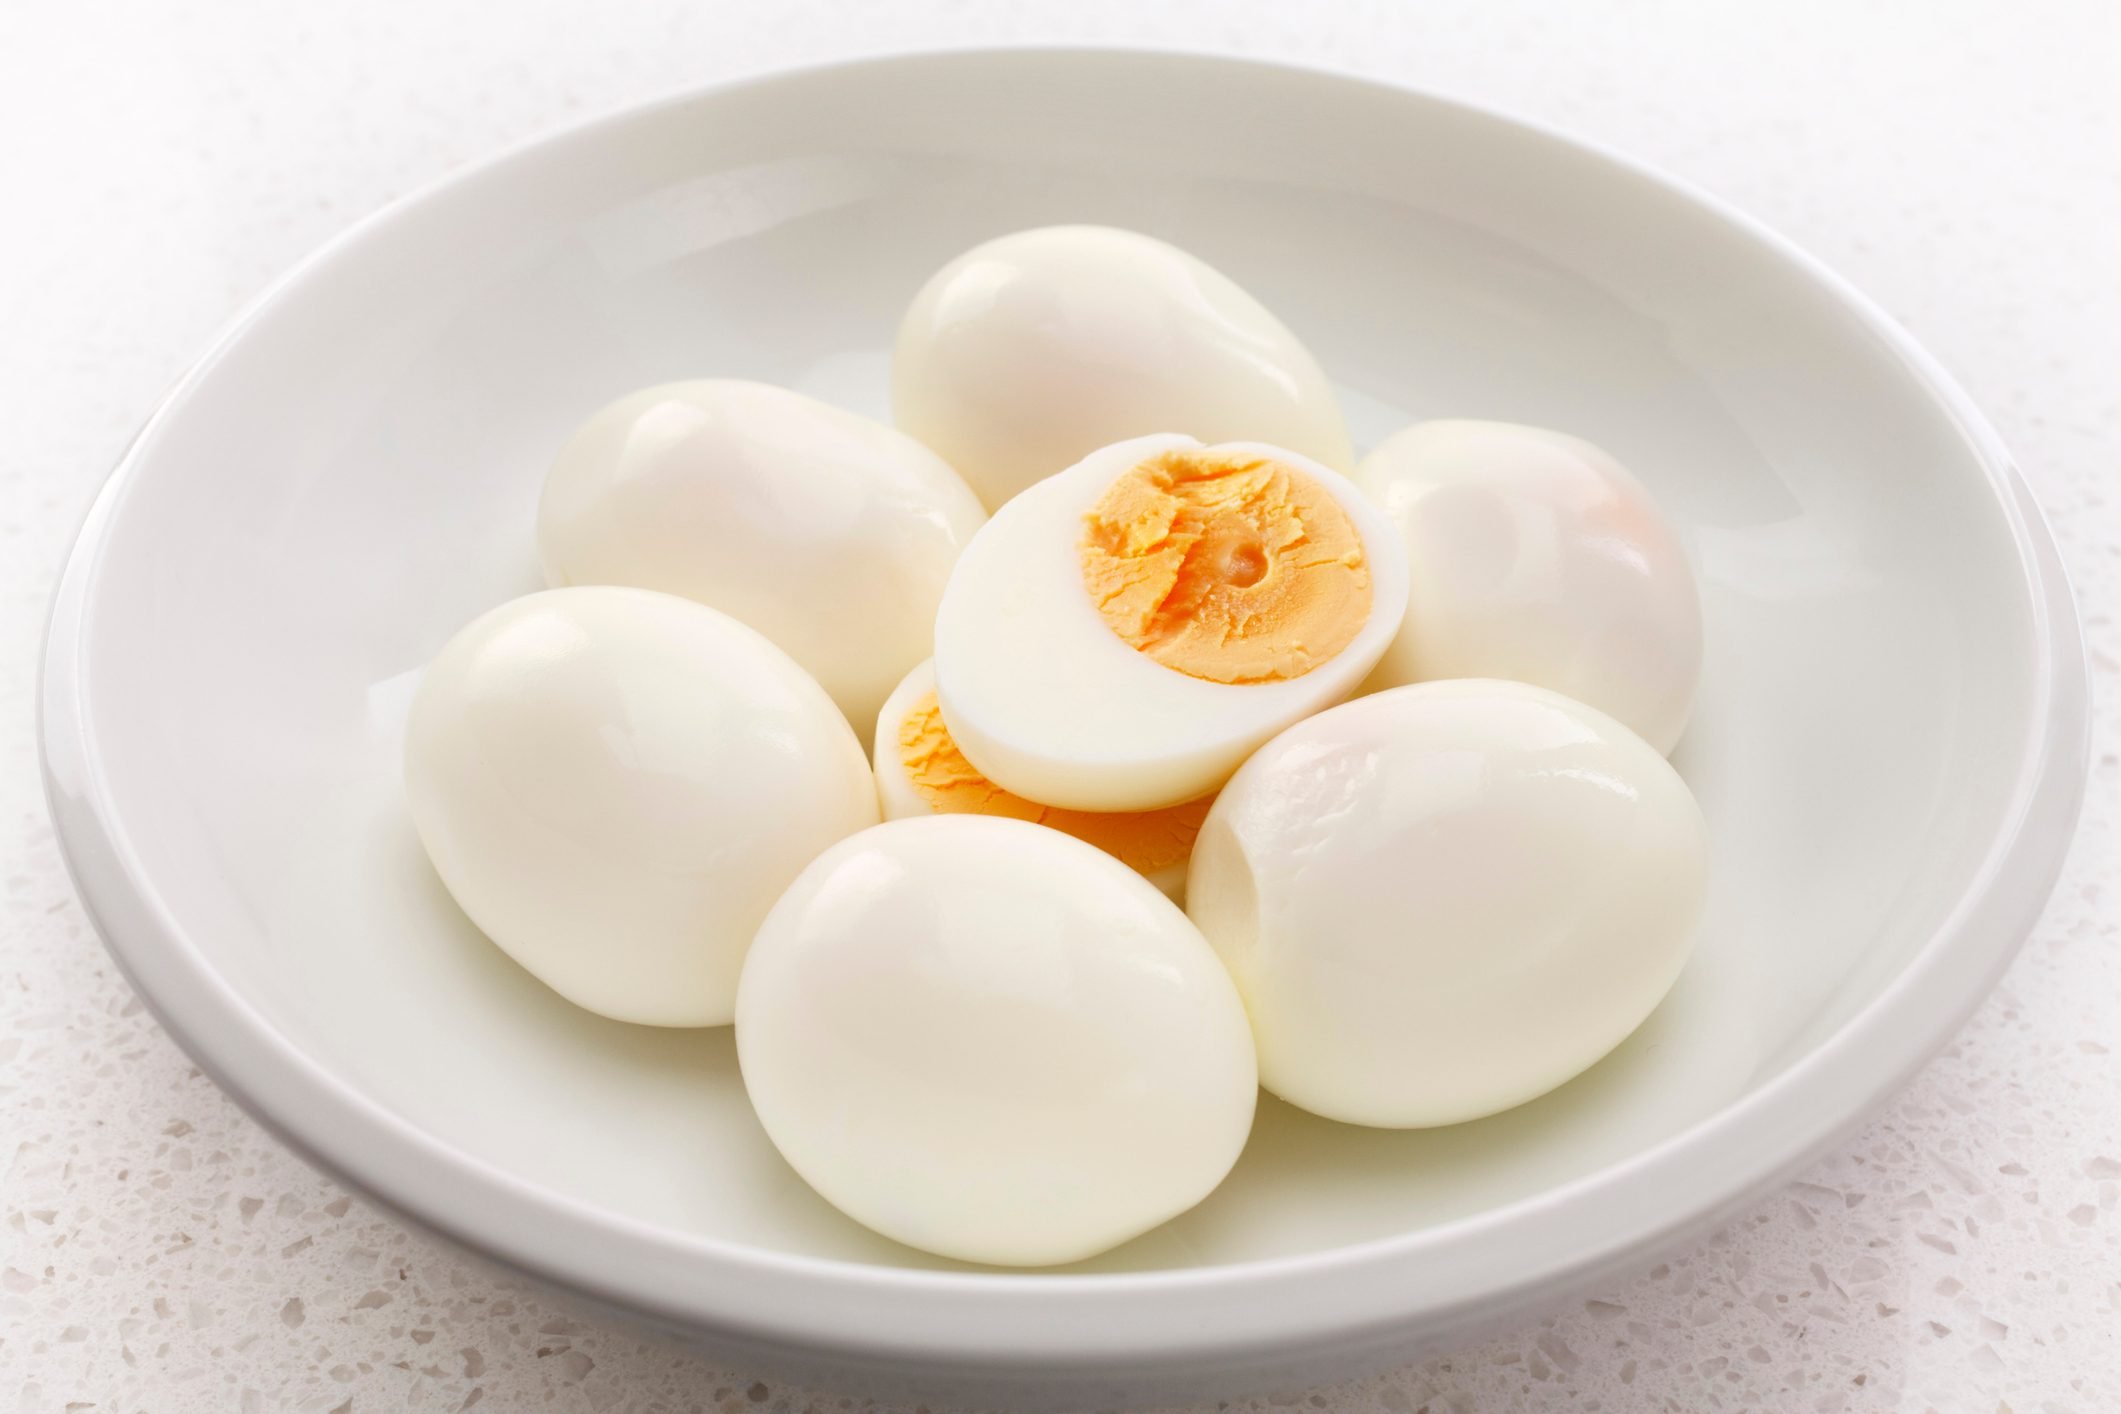  How Long Do Hard-Boiled Eggs Last in the Fridge?